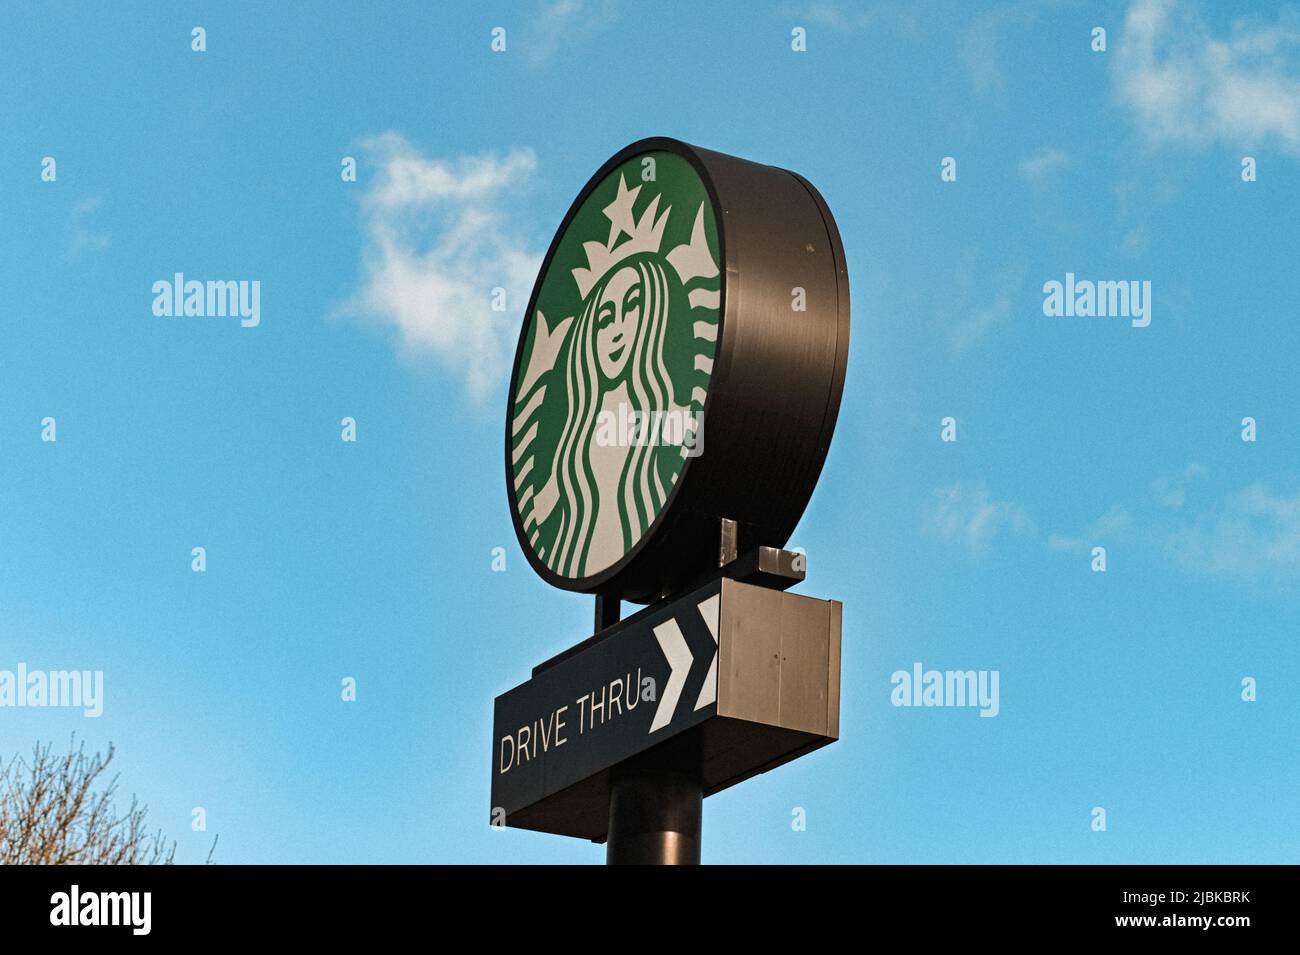 Eine Fahrt durch Startbucks Schild, hoch stehend mit dem Hintergrund eines blauen Himmels mit wispy Wolken, eine Person, eine Tasse und eine Nachbarschaft auf einmal Stockfoto